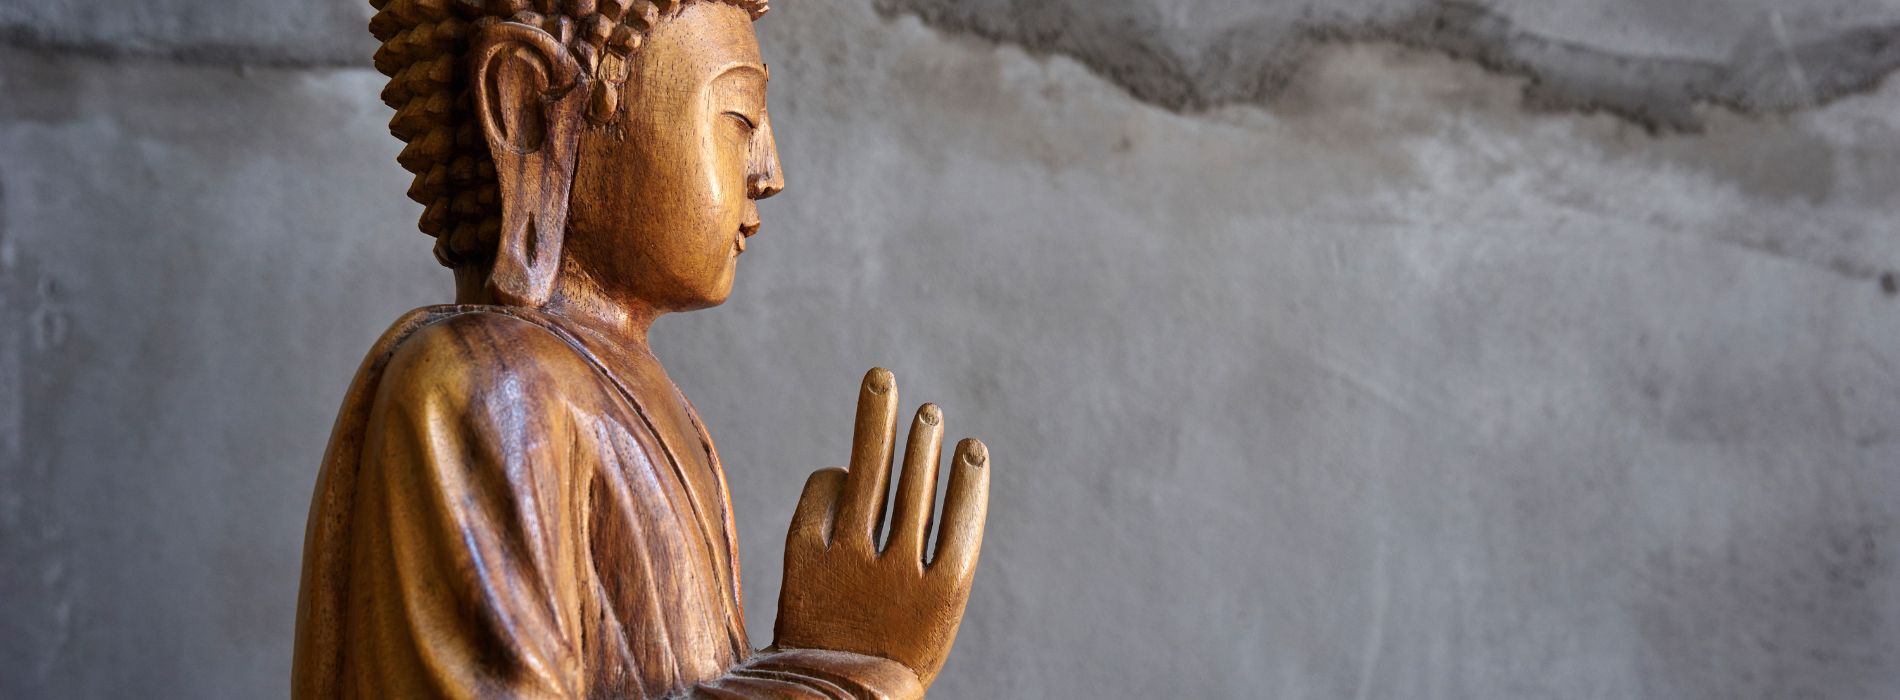 Comment sculpter un bouddha en bois ?